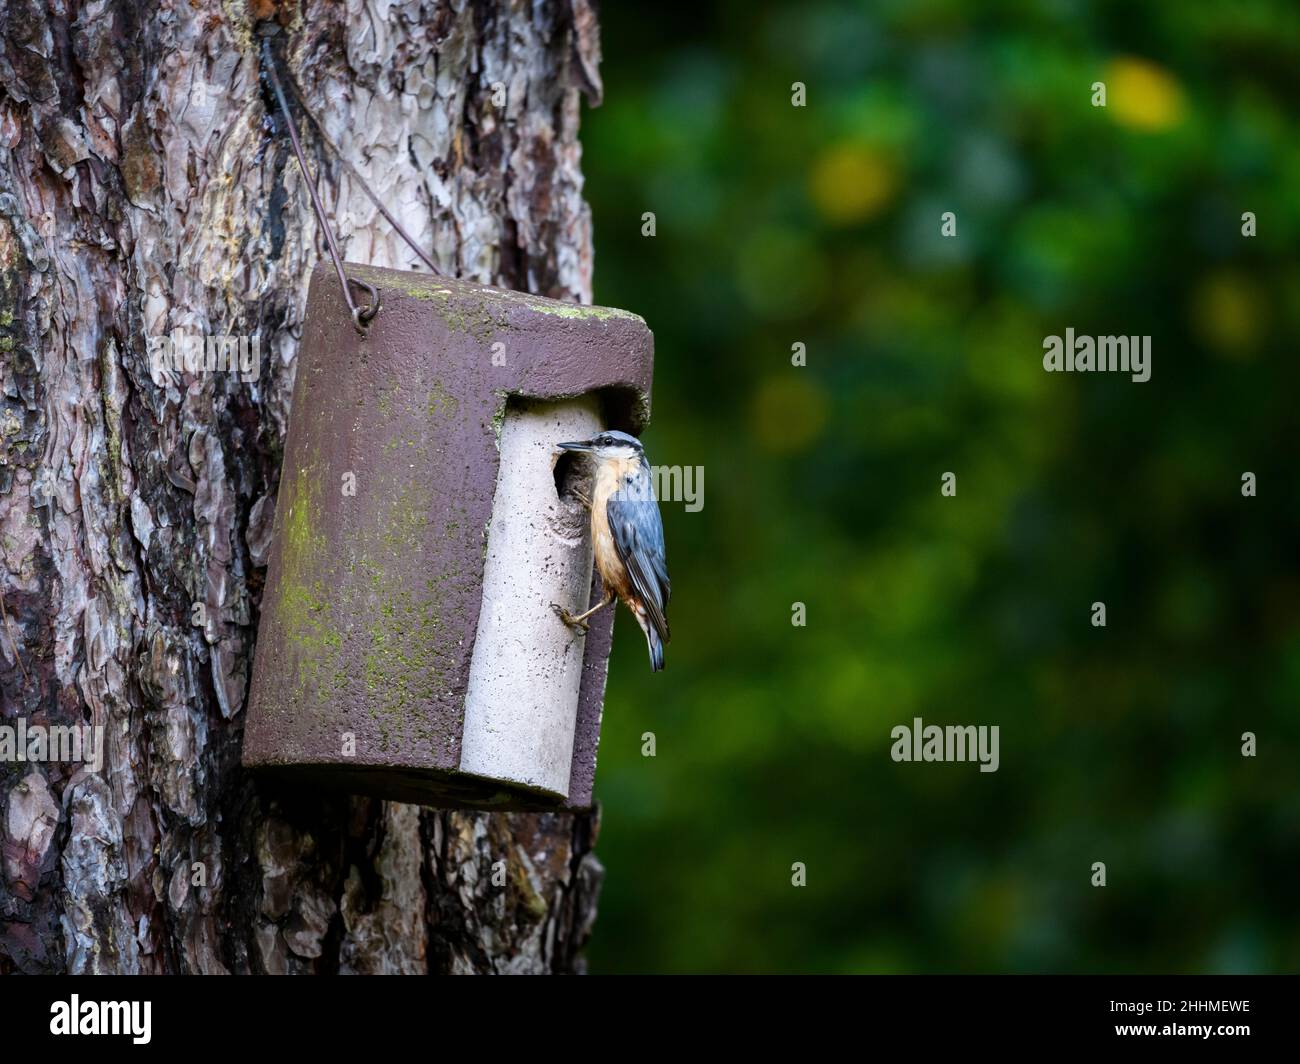 Primo piano di un singolo piccolo nuthatch (uccello da giardino) che si aggrappa alla scatola del nido appeso all'albero dal foro di entrata (occhio-striscia & becco) - Yorkshire occidentale, Inghilterra, Regno Unito. Foto Stock